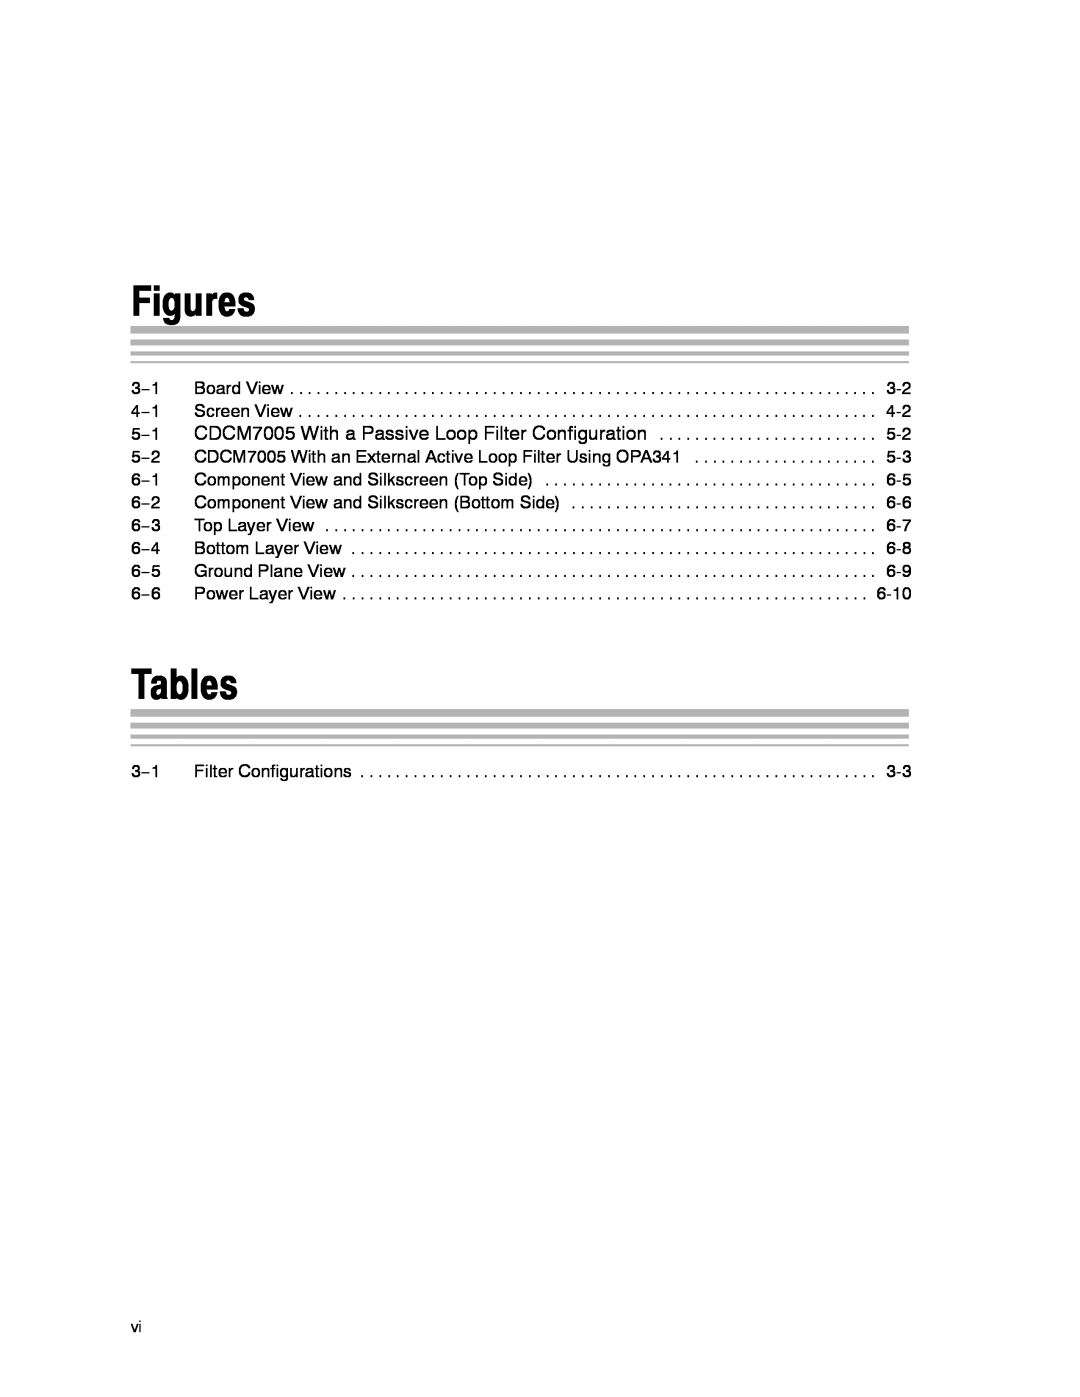 Texas Instruments CDCM7005 manual Figures, Tables, 3−1 Filter Configurations 